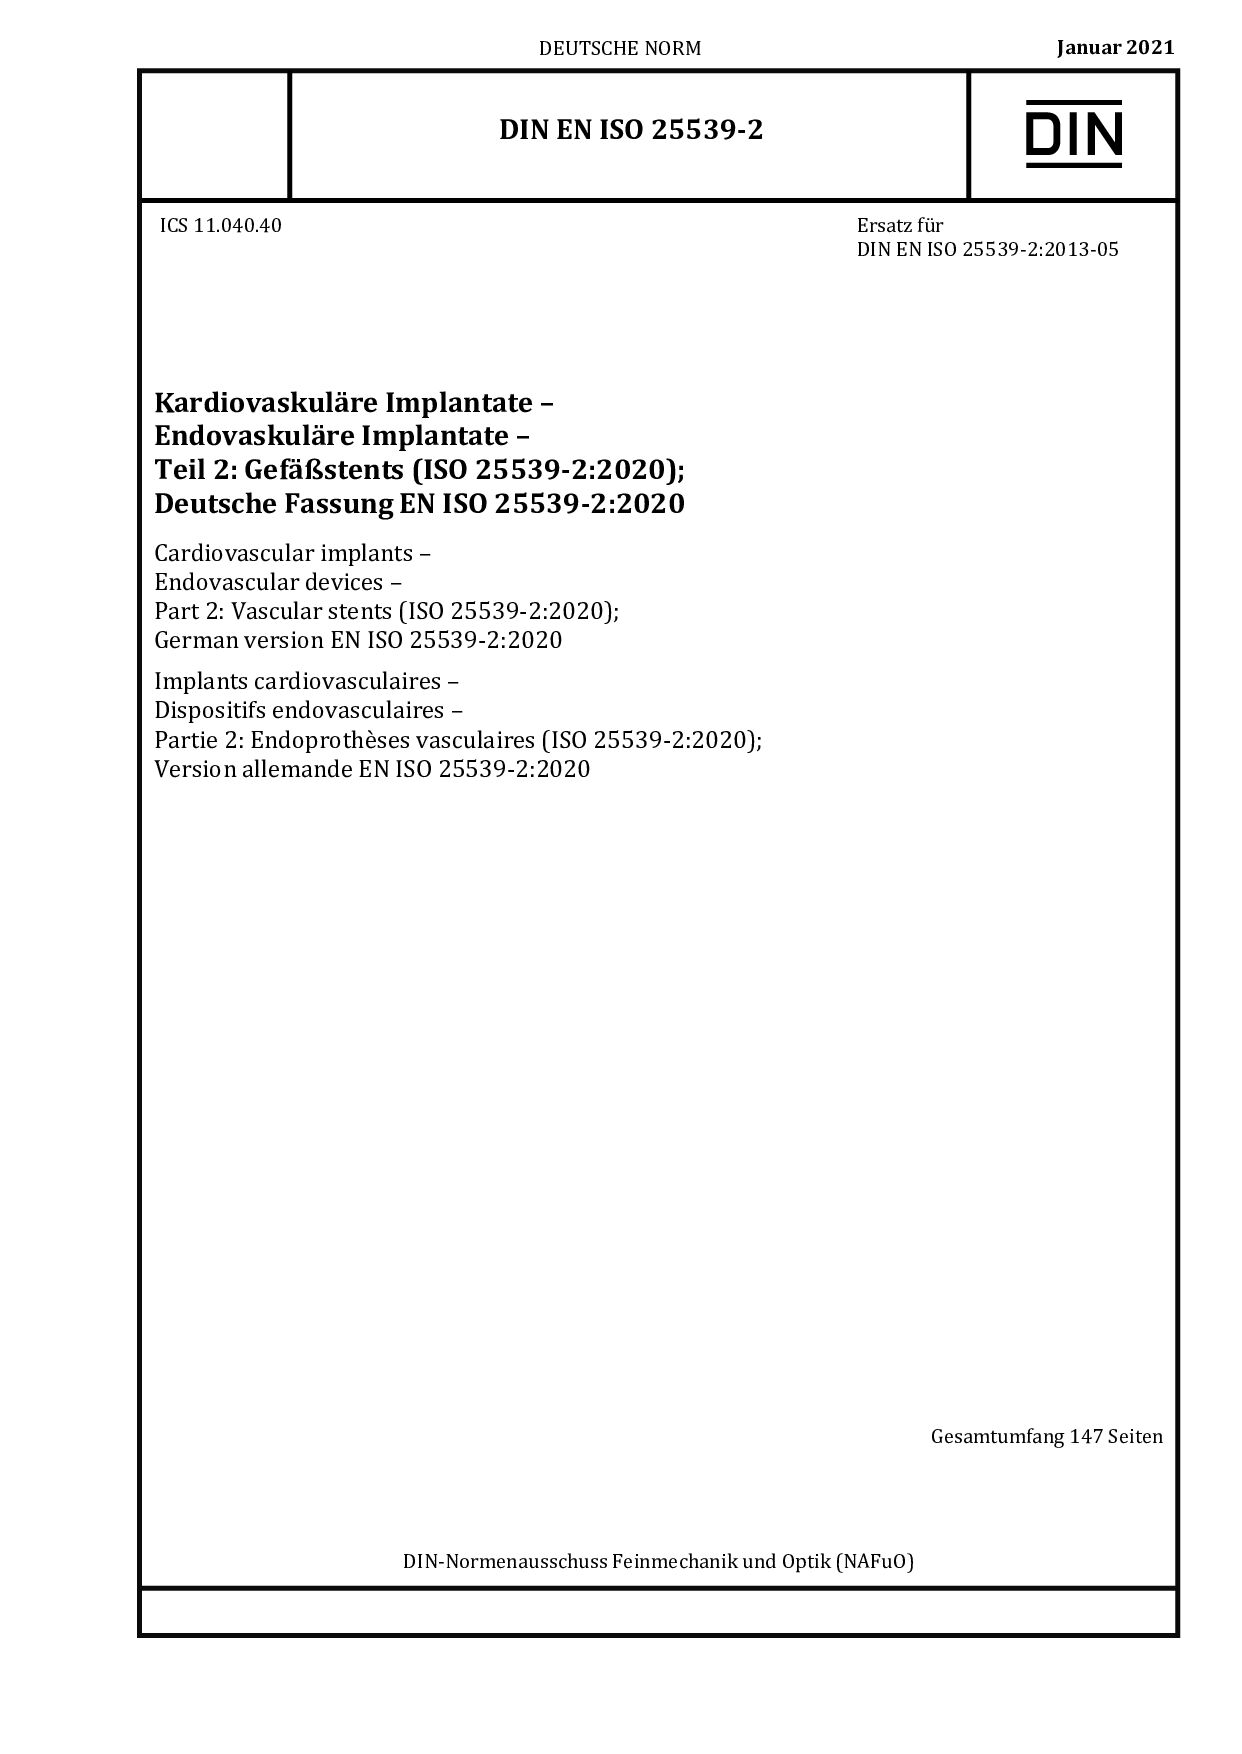 DIN EN ISO 25539-2:2021